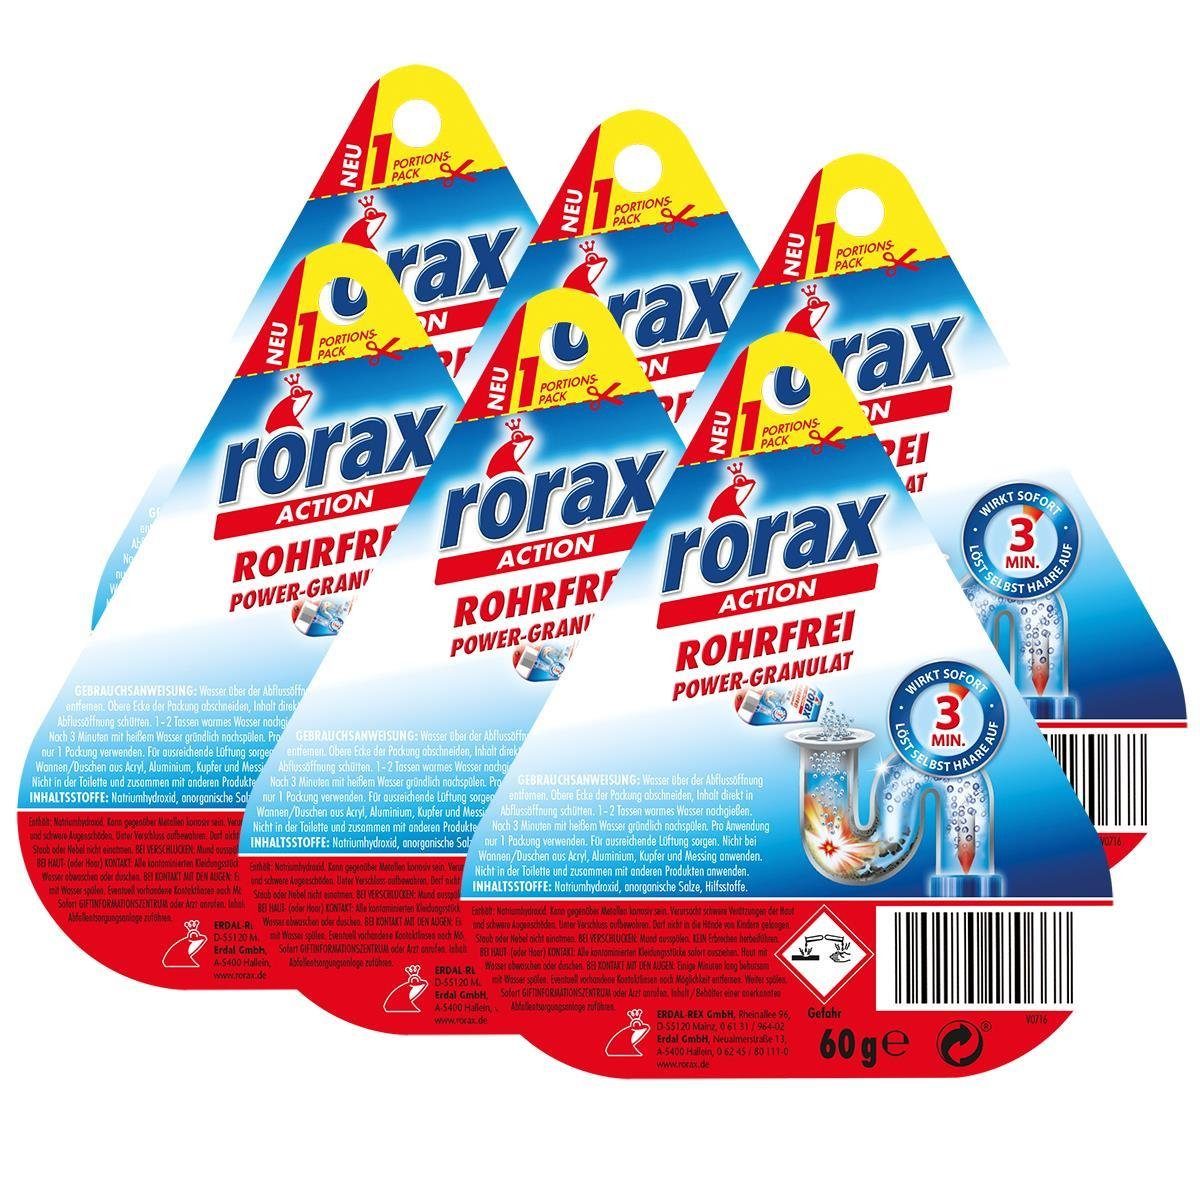 rorax 6x rorax Rohrfrei Power-Granulat & Rohrreiniger - Wirkt 60g lös Portionspack sofort